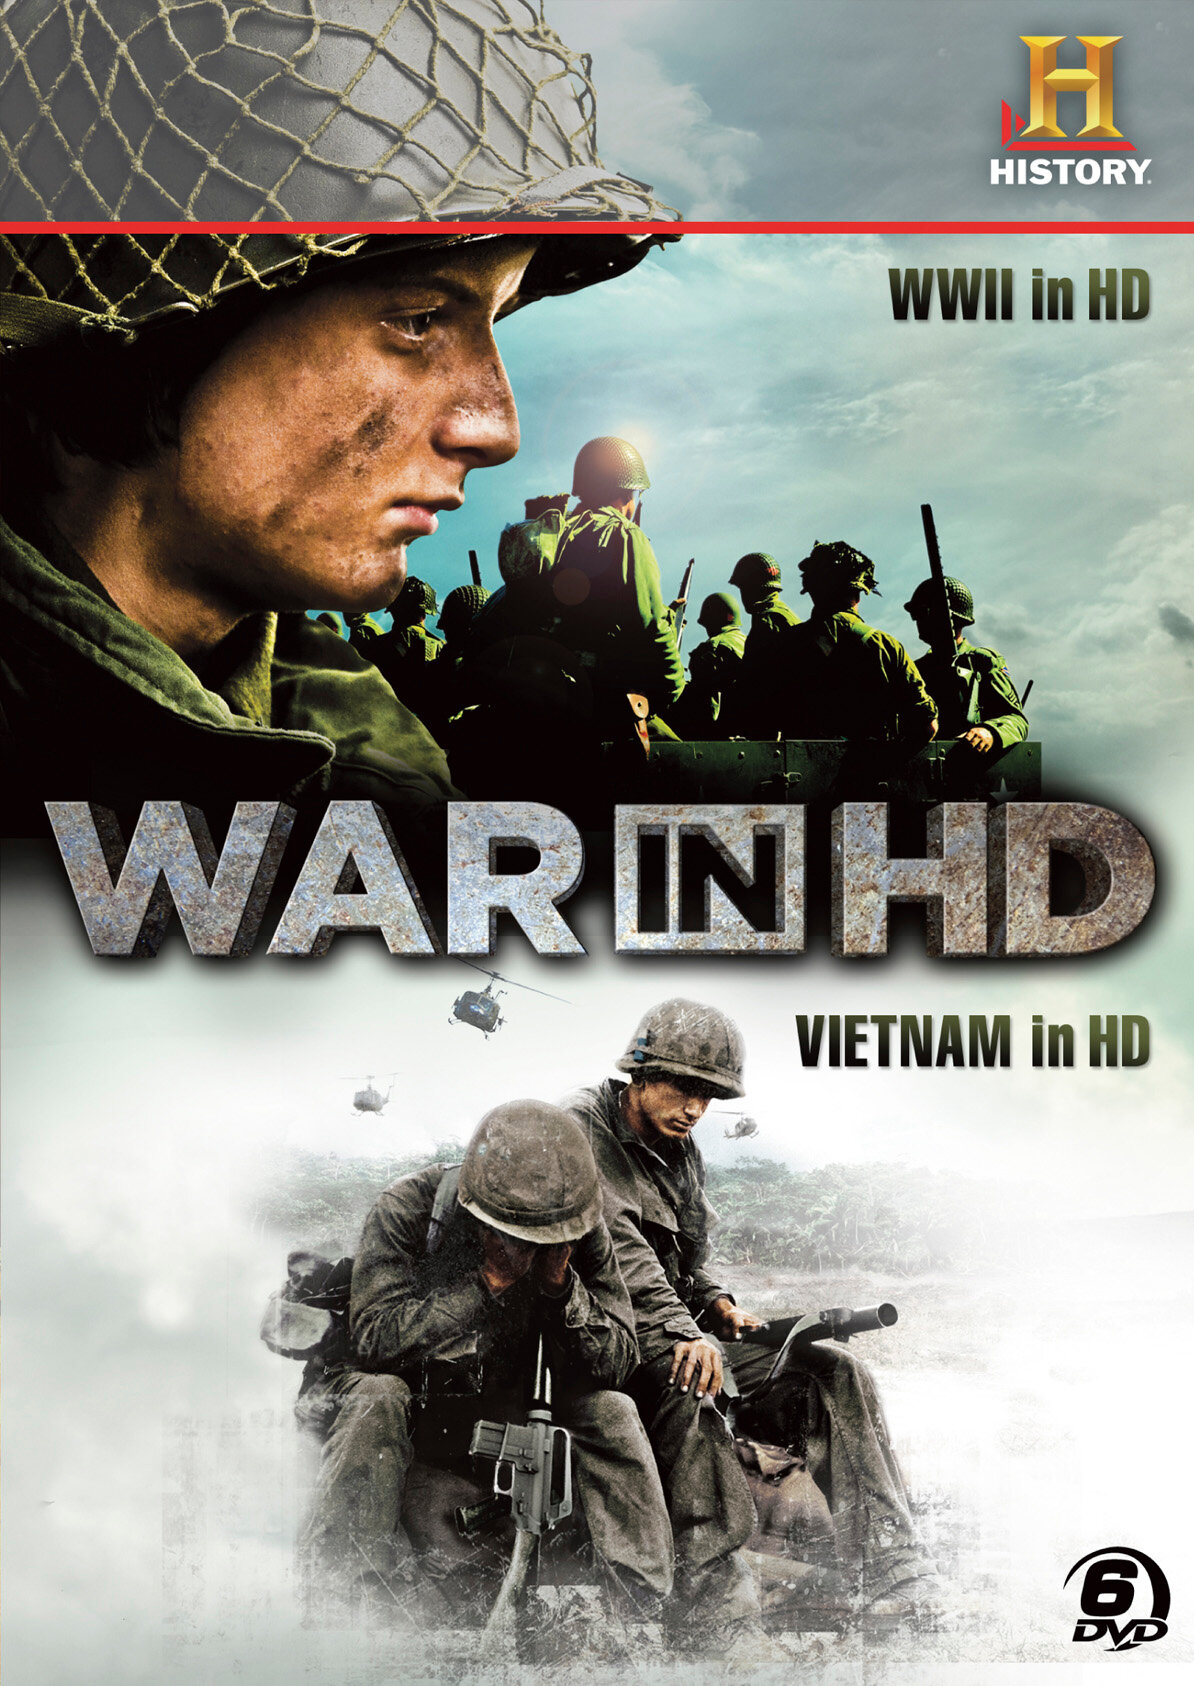  Затерянные хроники вьетнамской войны | Vietnam in HD (2011) 